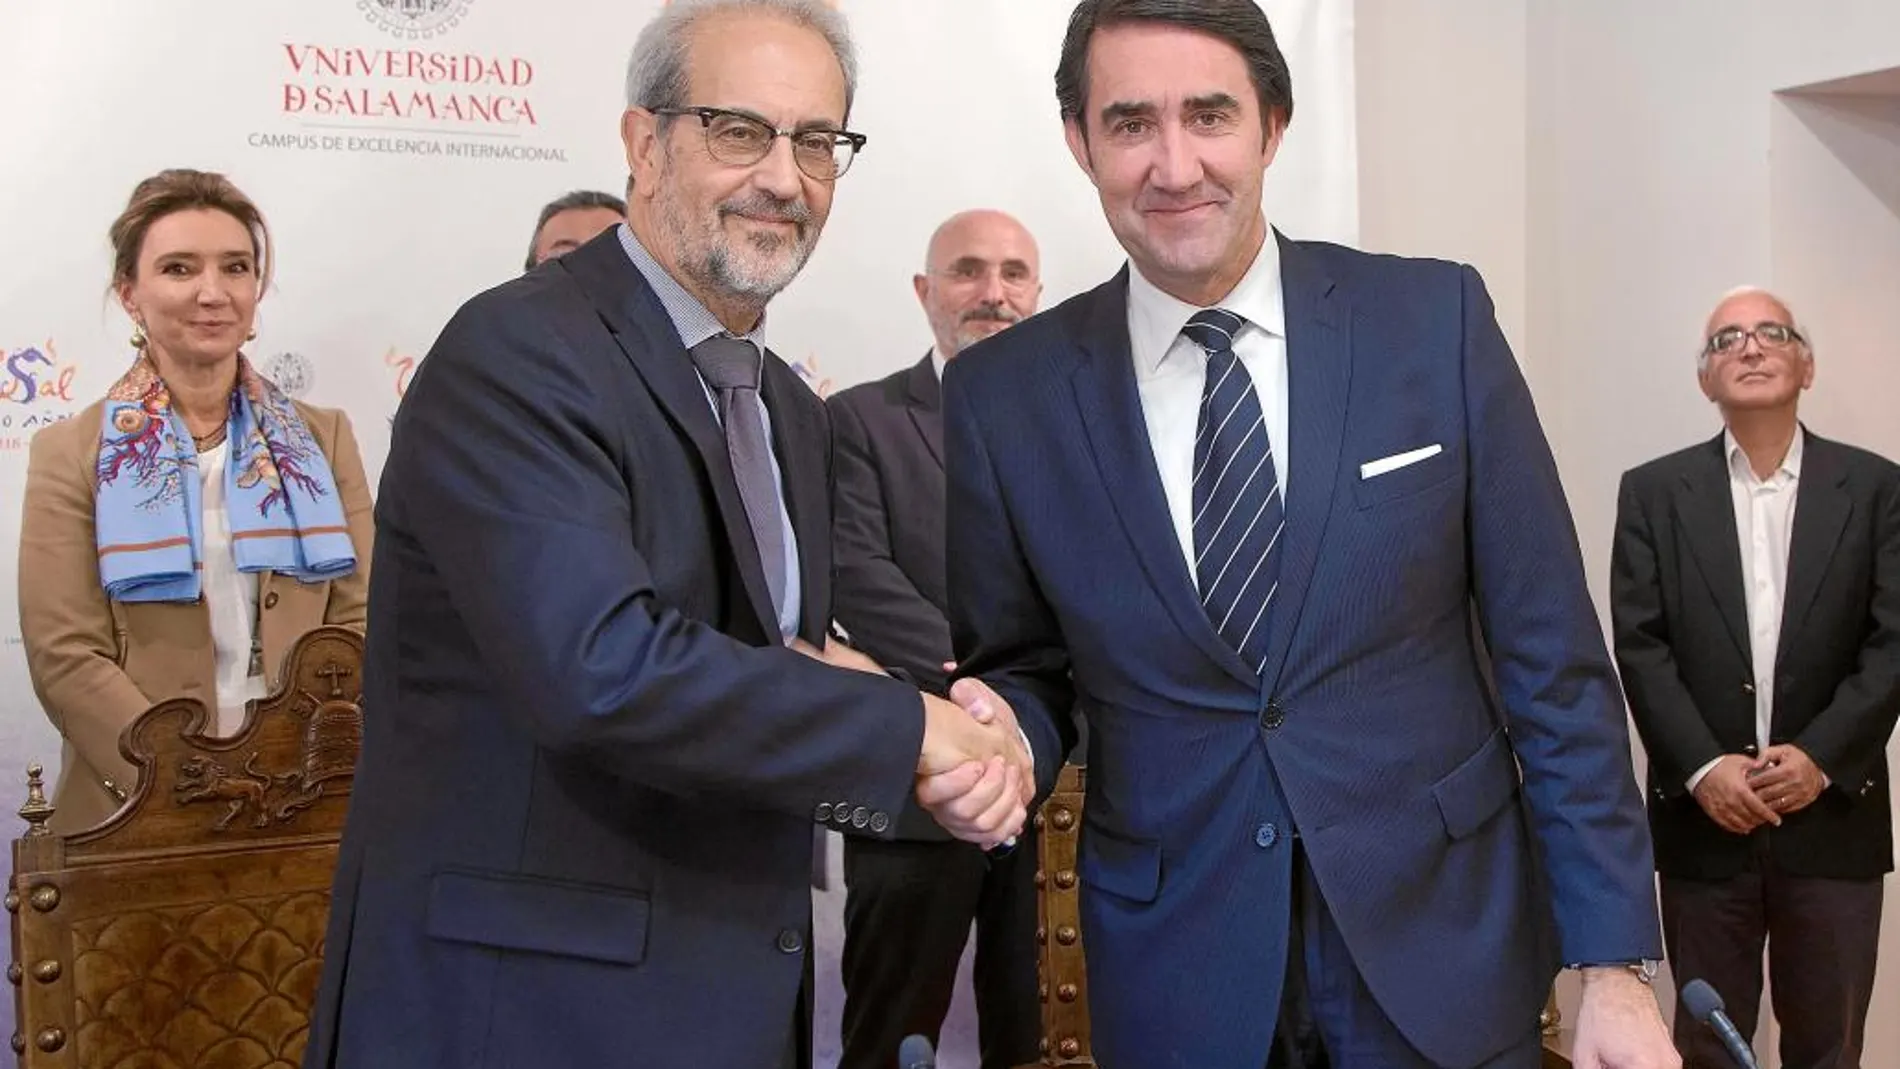 El consejero Suárez-Quiñones y el rector de la Universidad de Salamanca, Daniel Hernández, suscriben el acuerdo